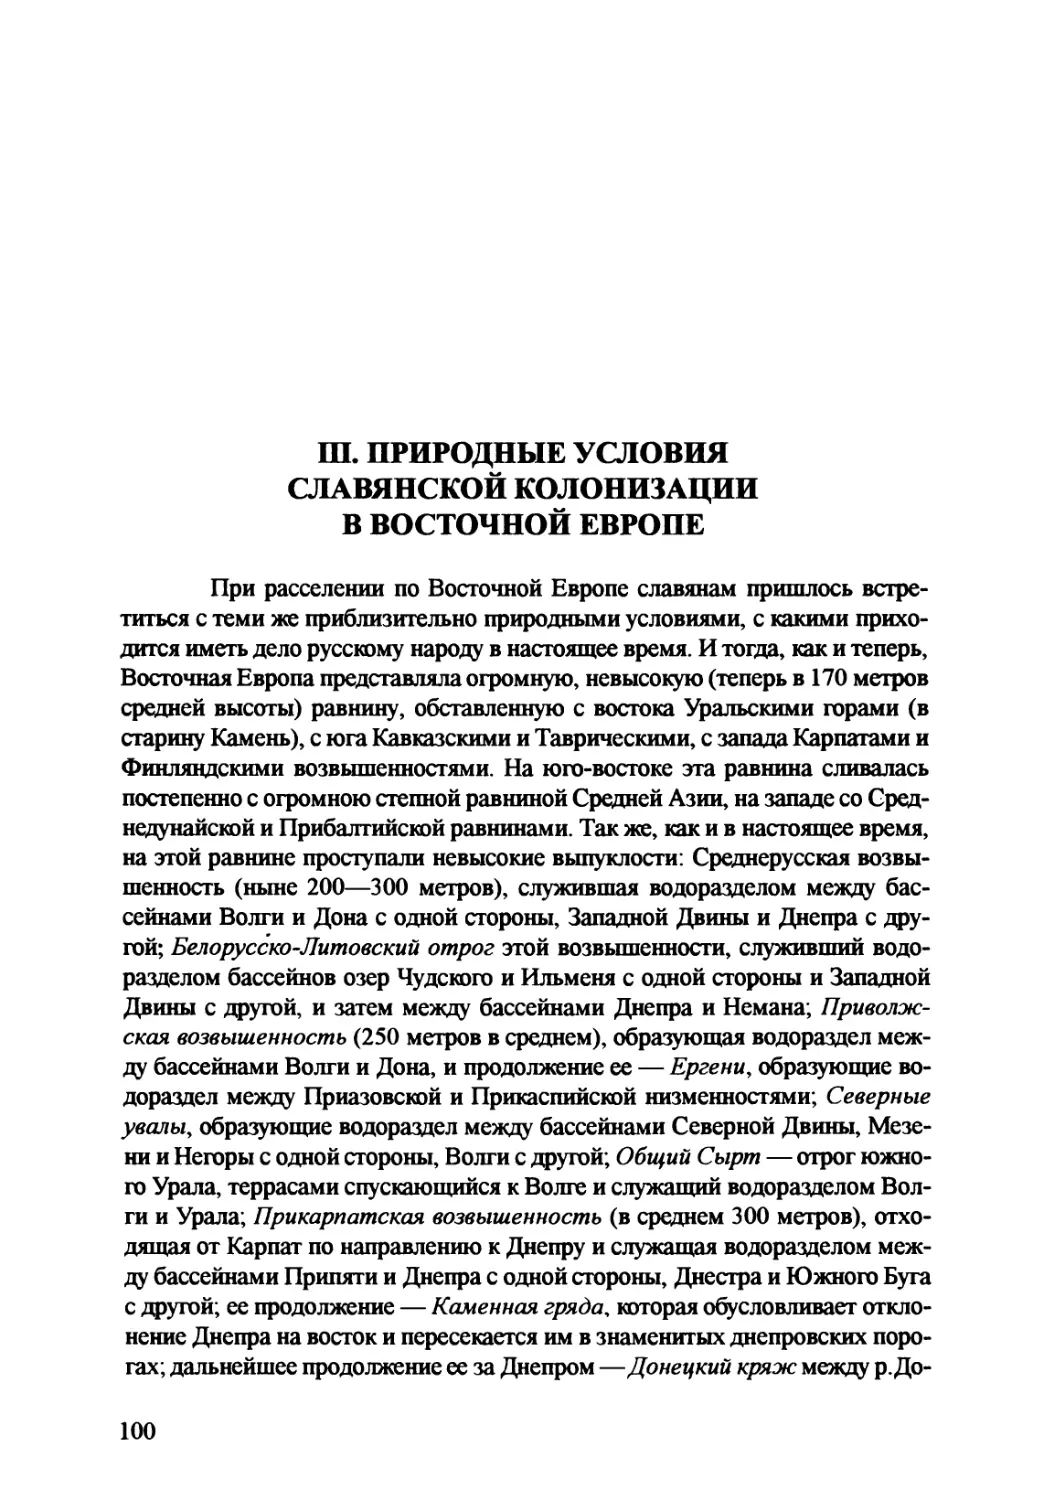 III. Природные условия славянской колонизации в Восточной Европе